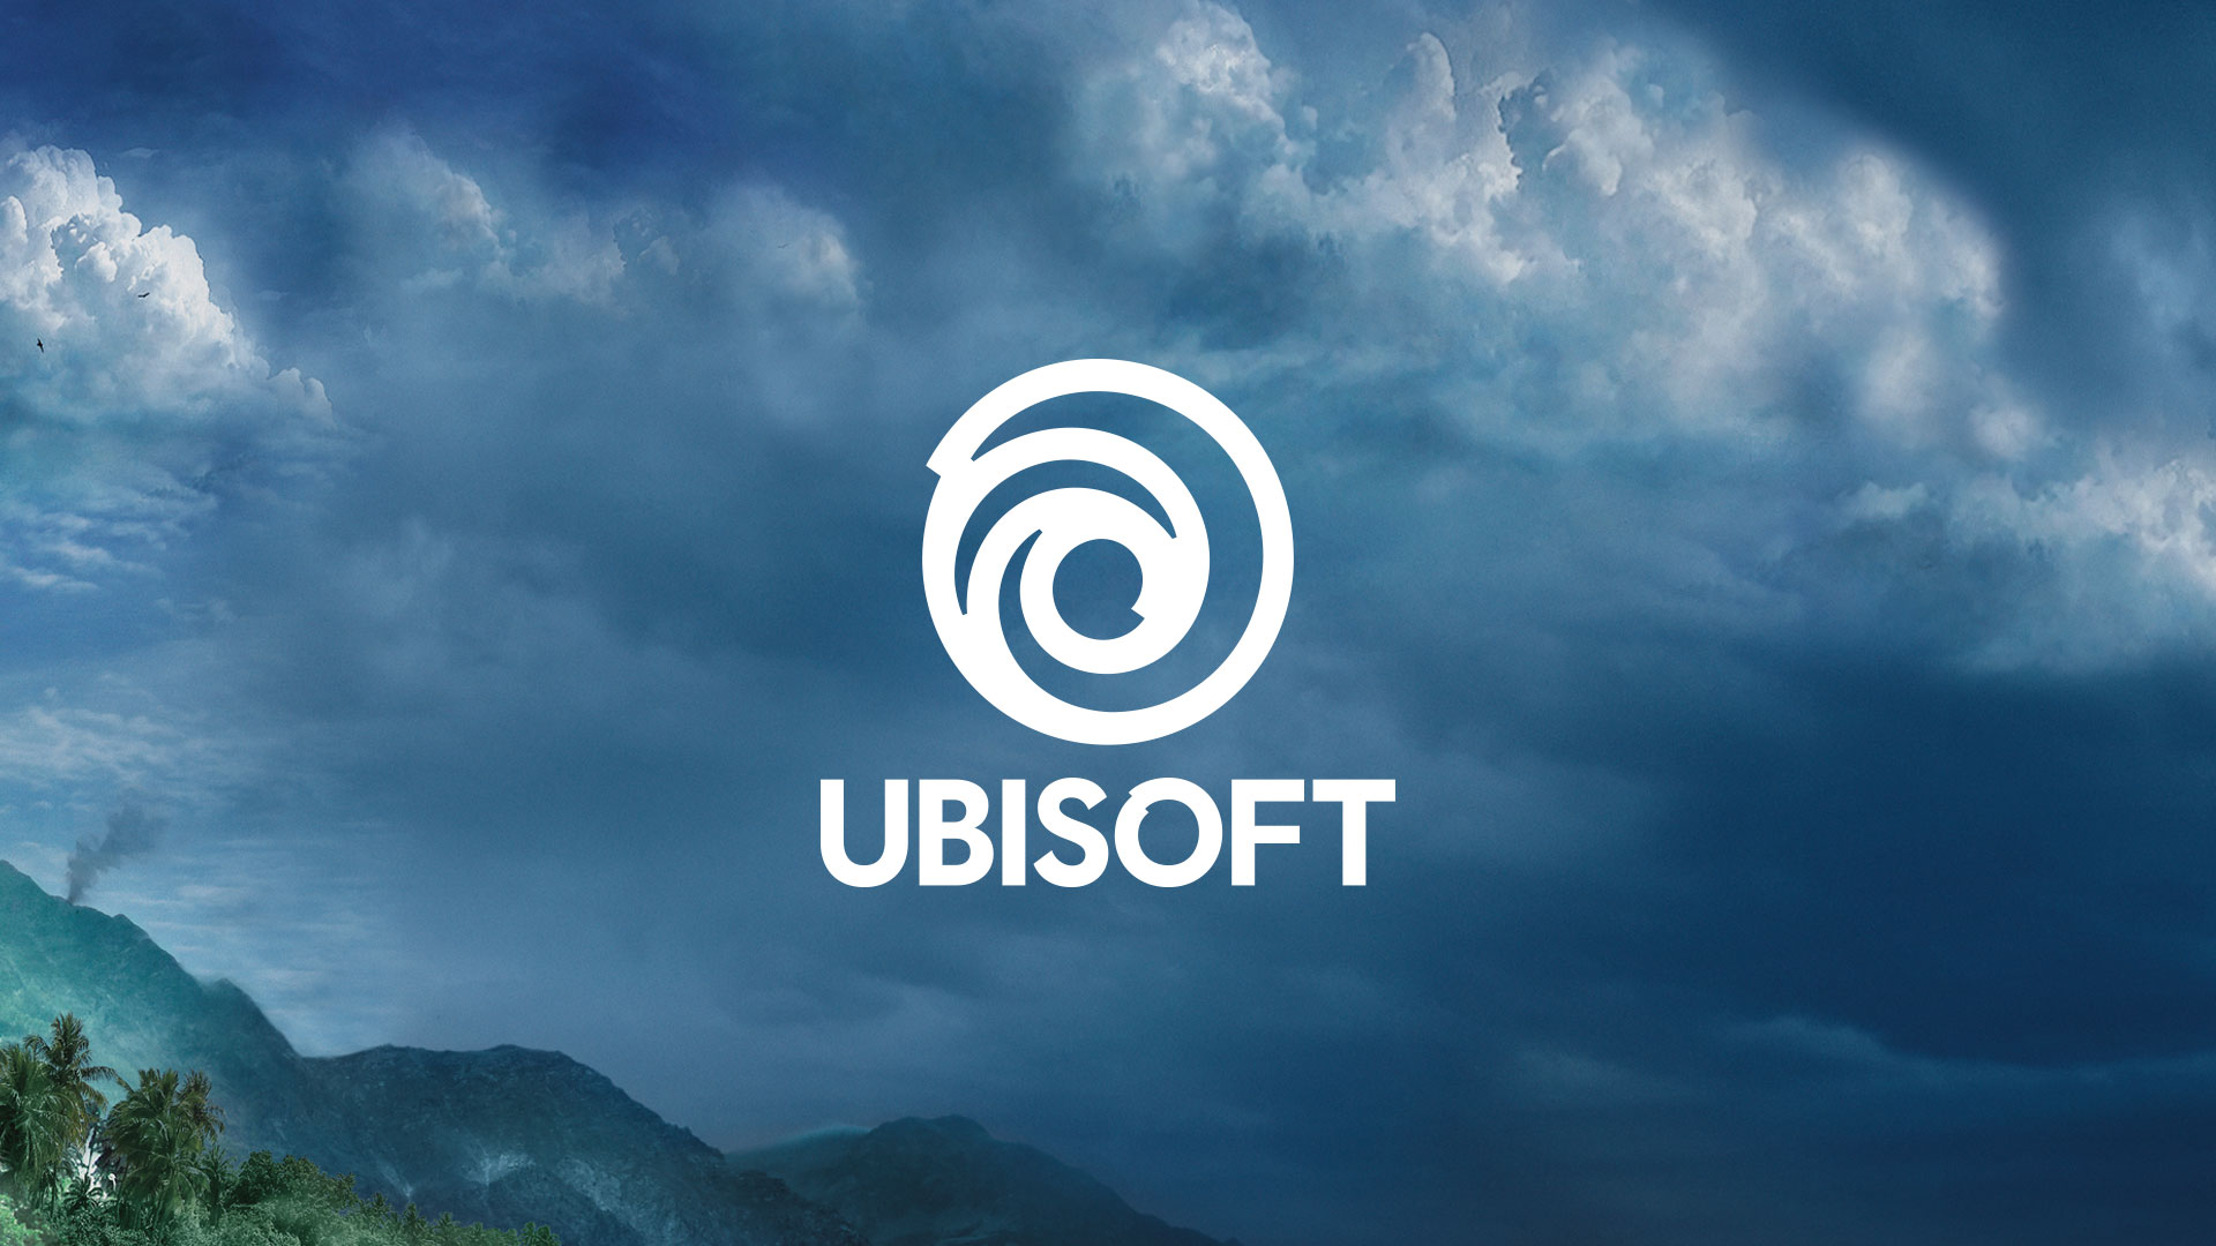 Ubisoft setzt Werbung auf Twitter aus Titel